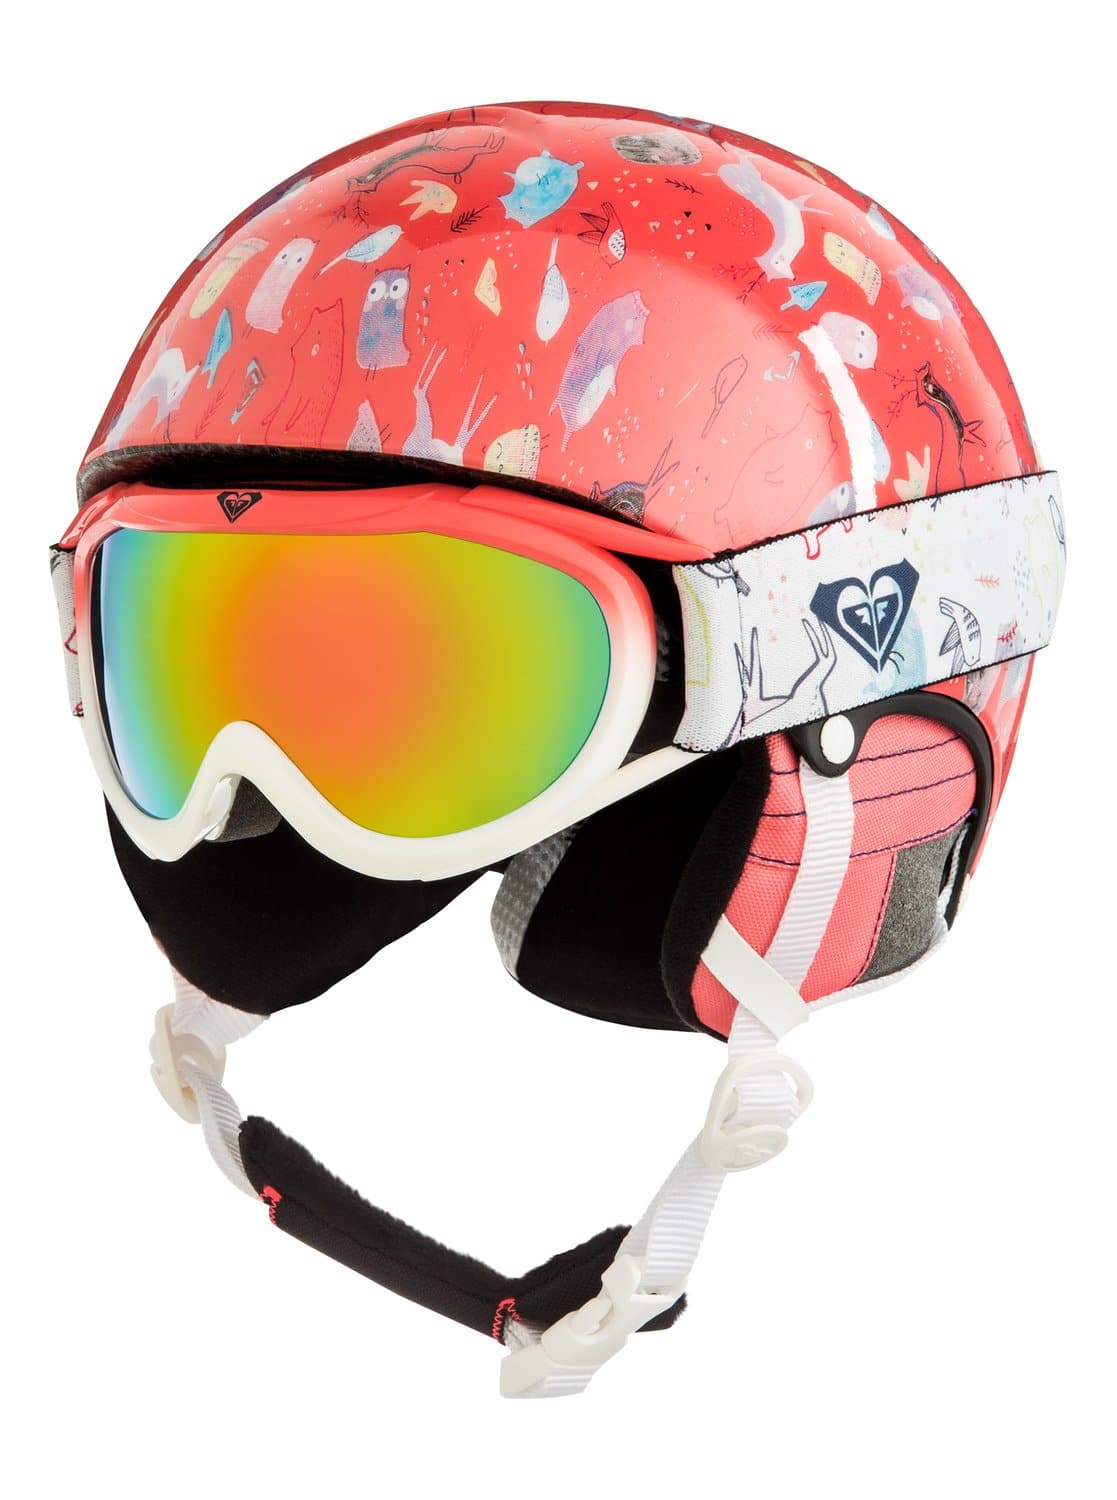 Casco Carreras Esquí Mujer : casco esquí racing mujer